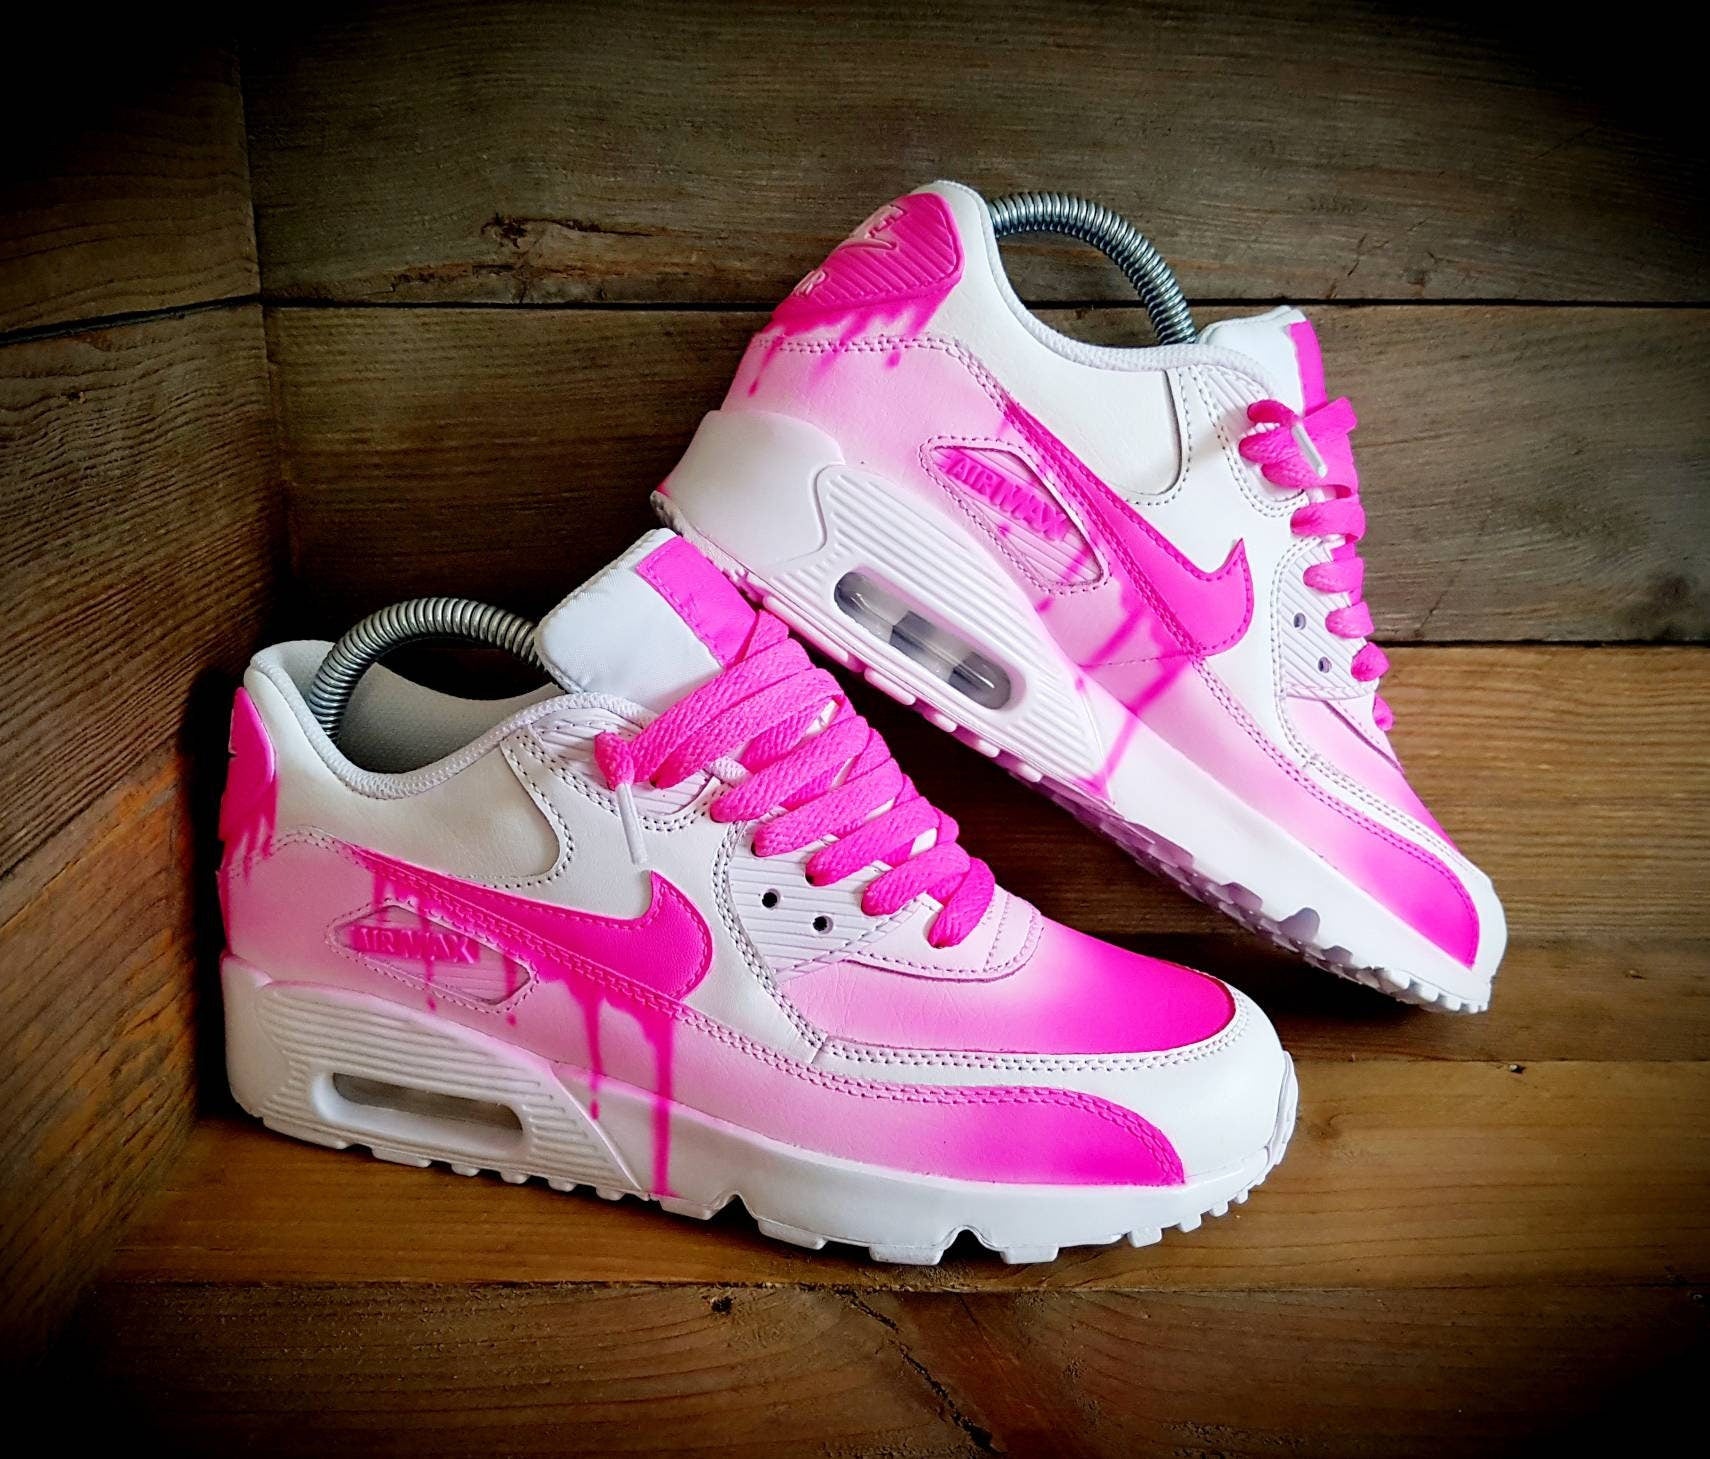 Custom Painted Air Max 90/Sneakers/Shoes/Kicks/Premium/Personalised/Drip Fade-Neon Pink